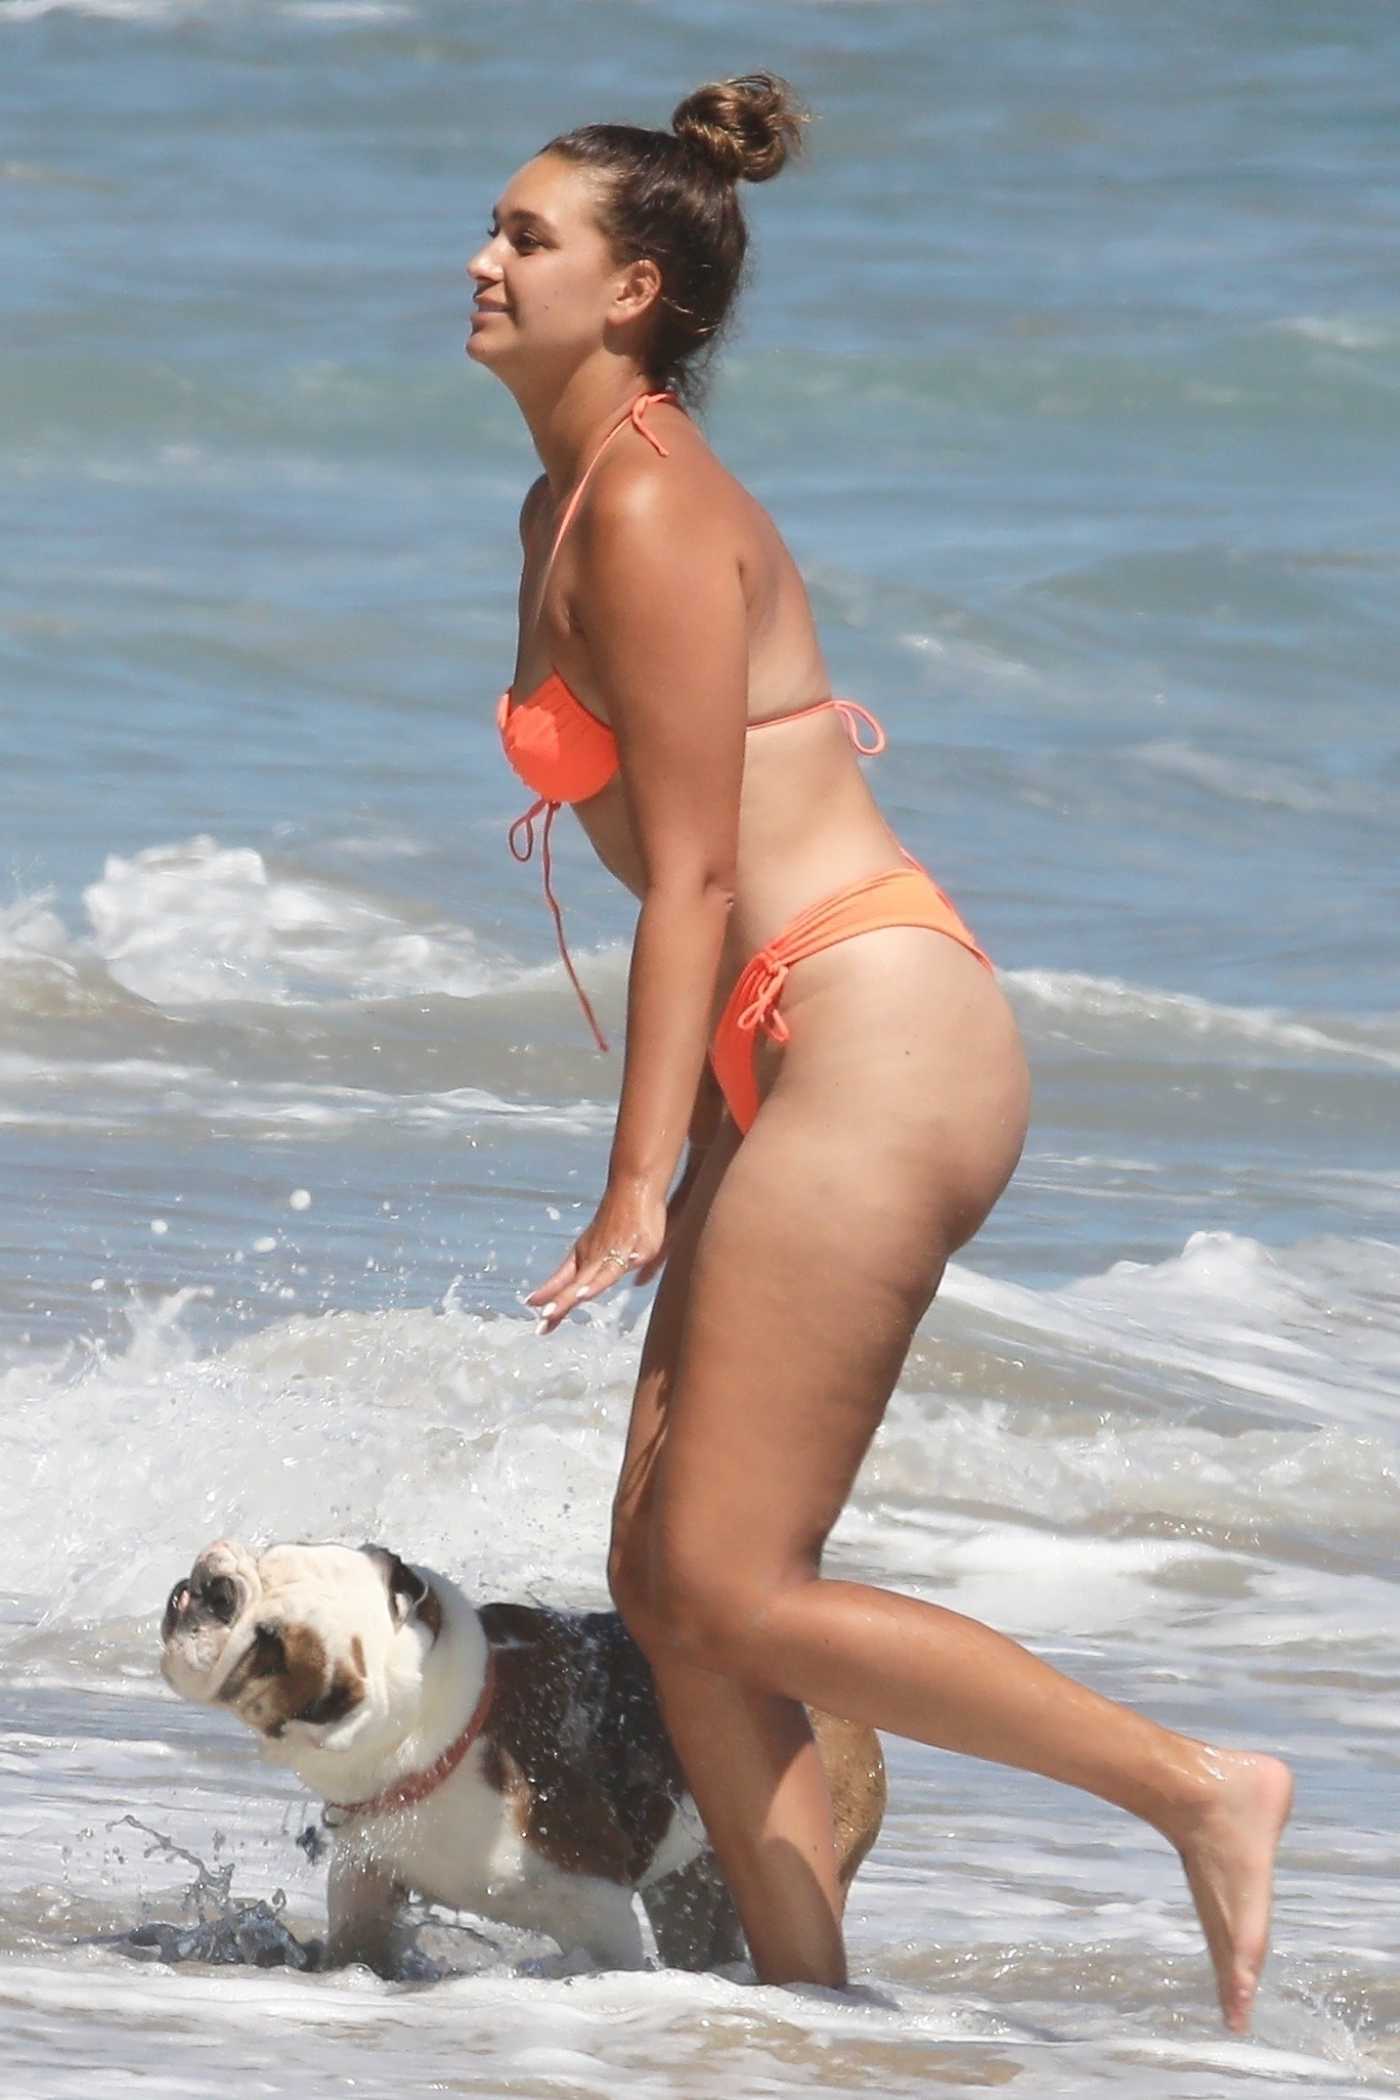 April Love Geary in an Orange Bikini on the Beach in Malibu 06/23/2022